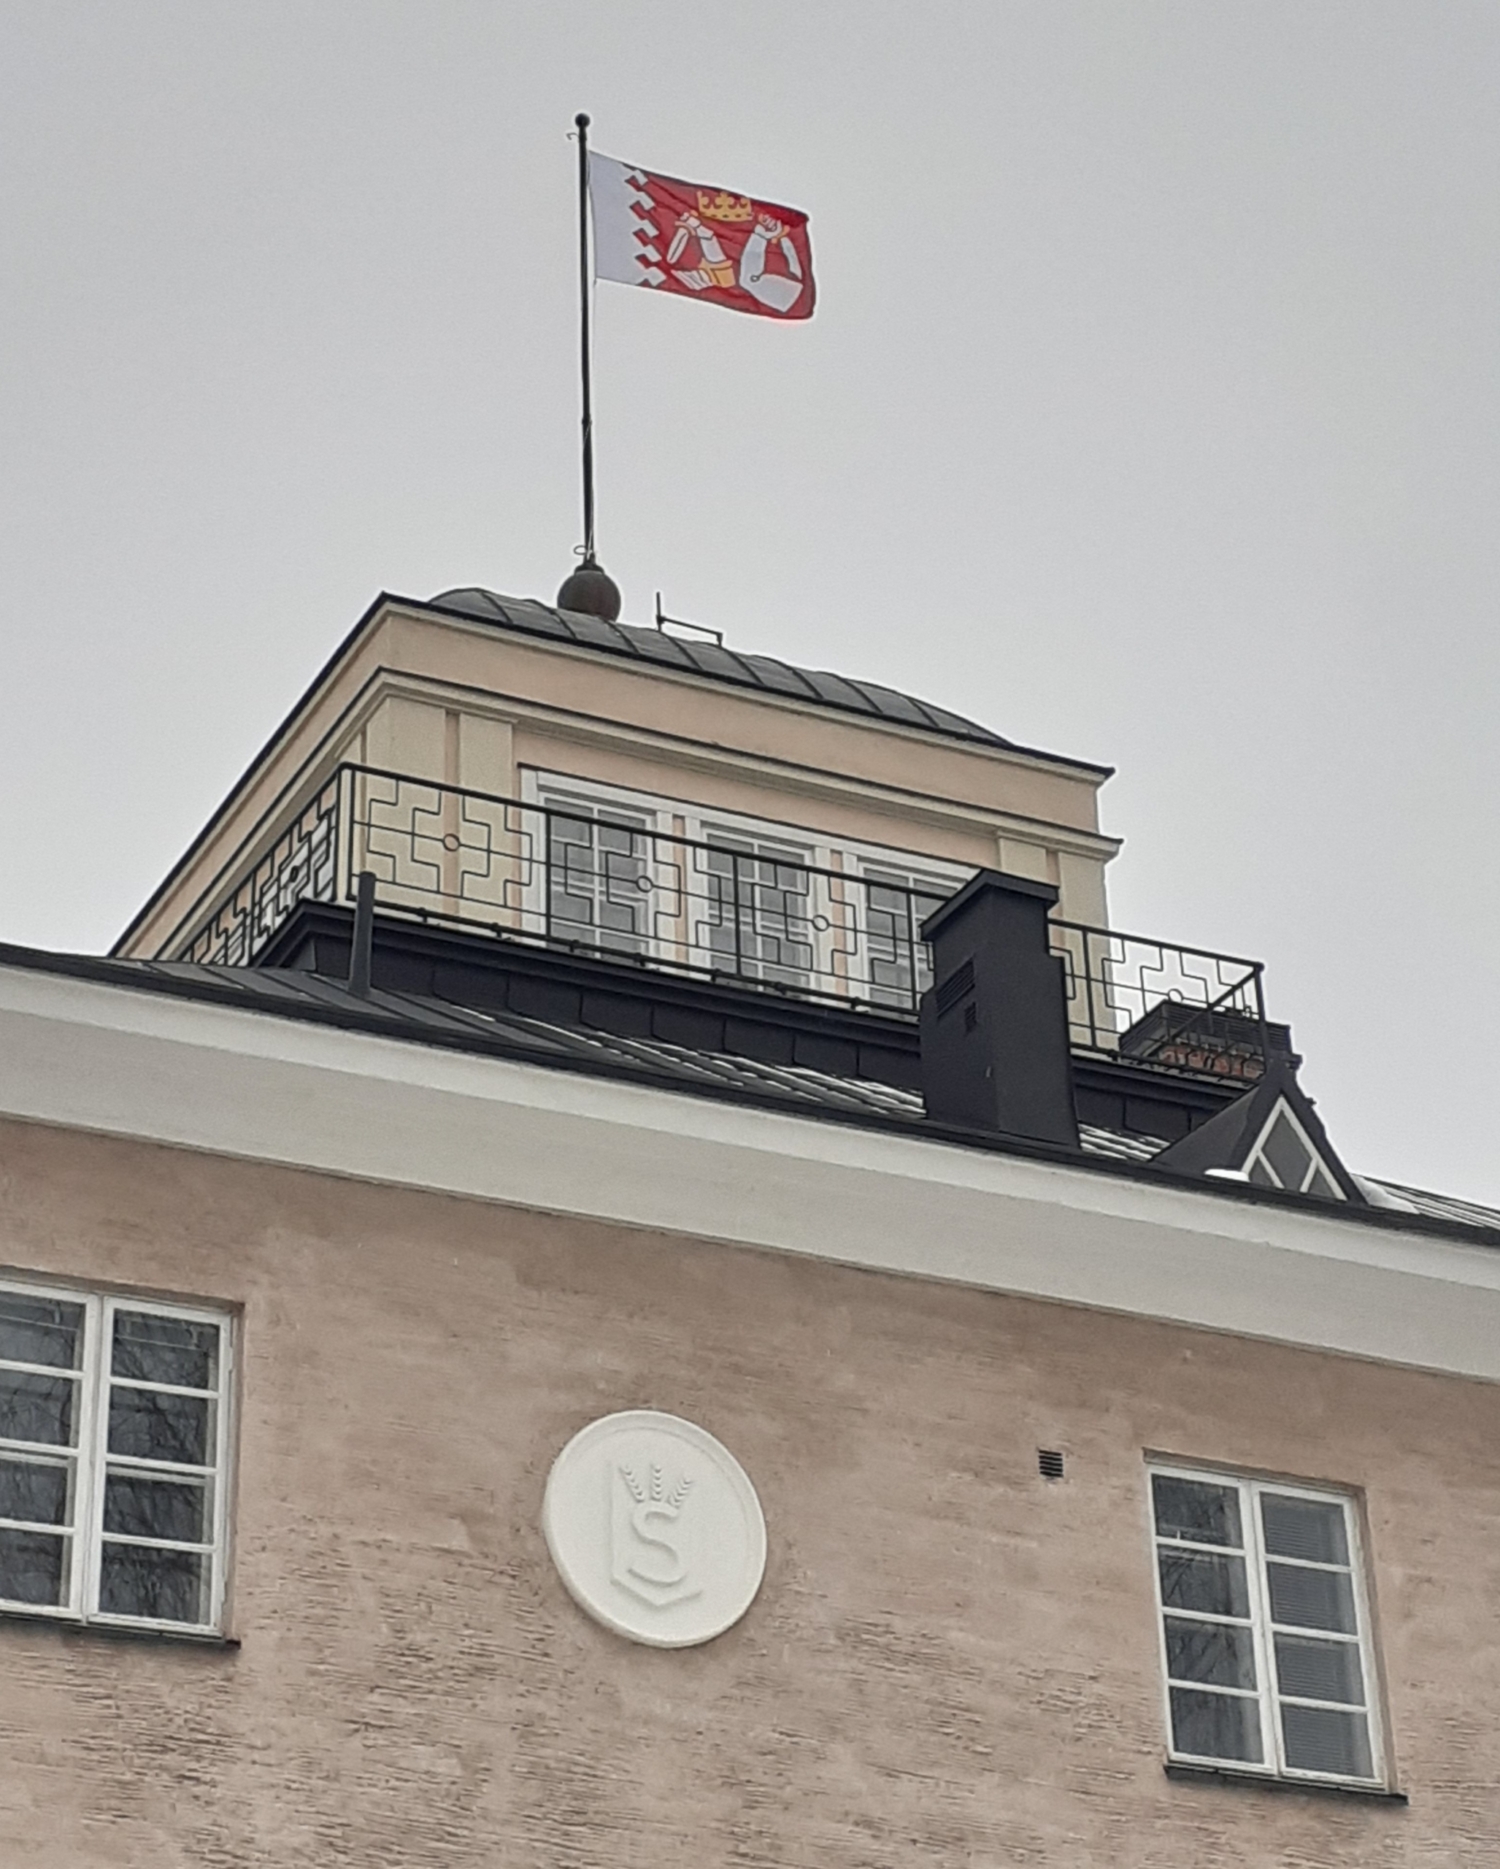 Kuvassa kivirakennus, jonka tornissa liehuu Pohjois-Karjalan maakuntalippu. Rakennuksen seinässä on Suojeluskunnan tunnus.